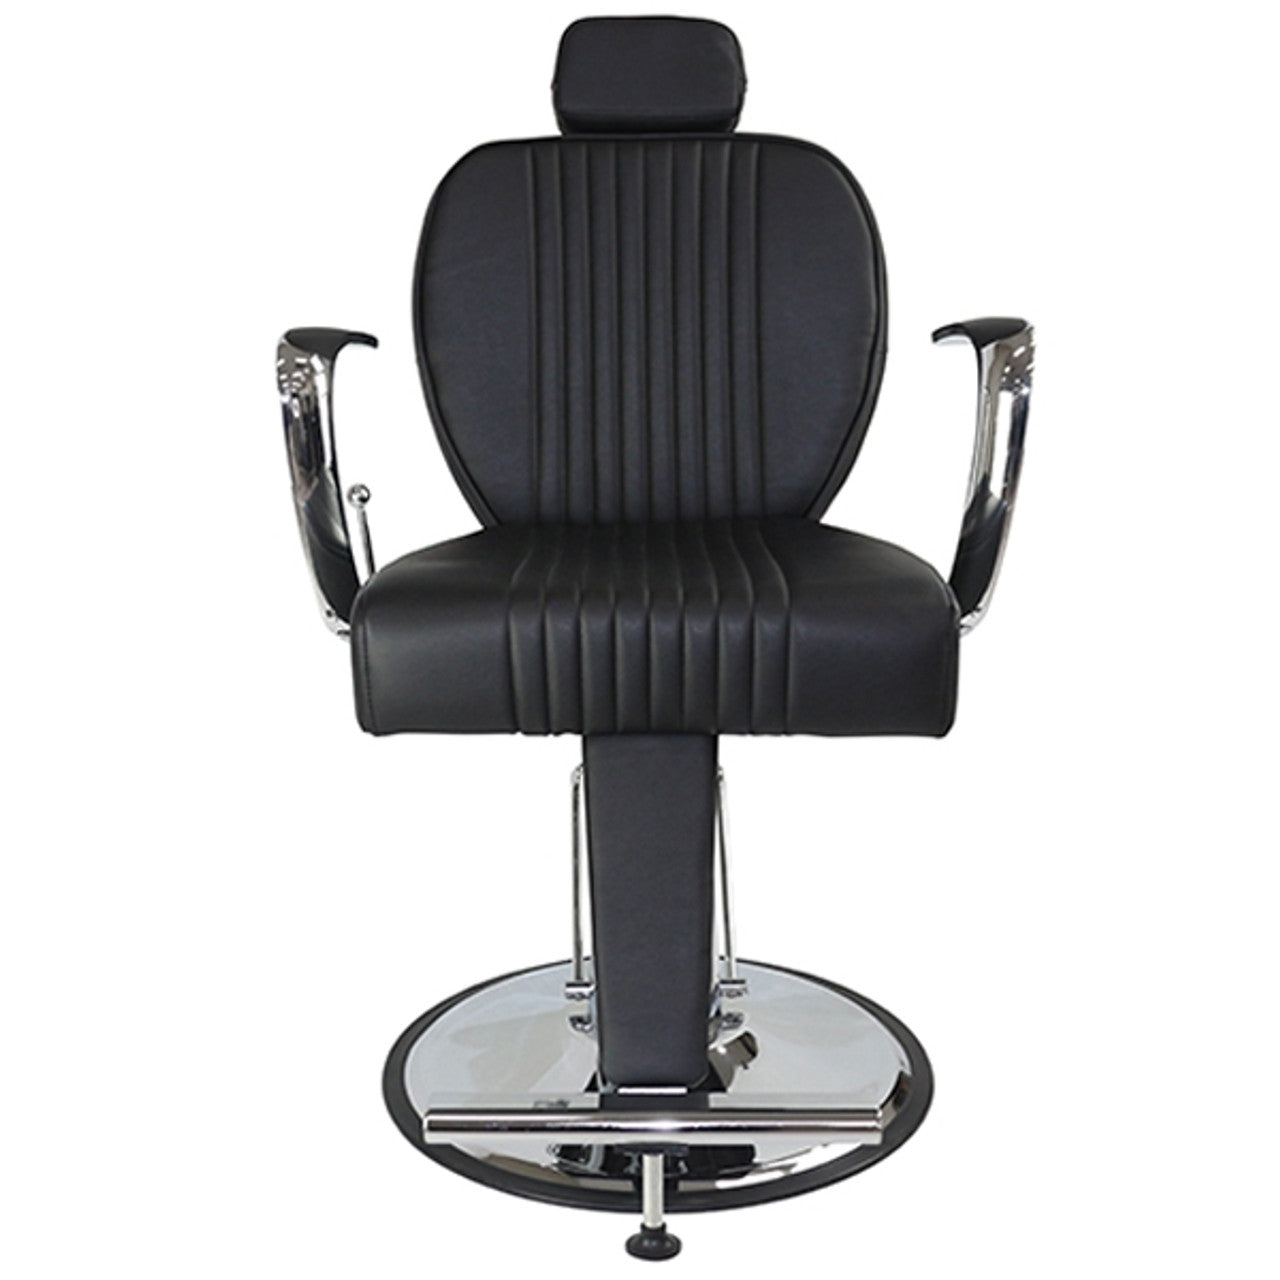 Joiken Titan Recliner Chair - Black